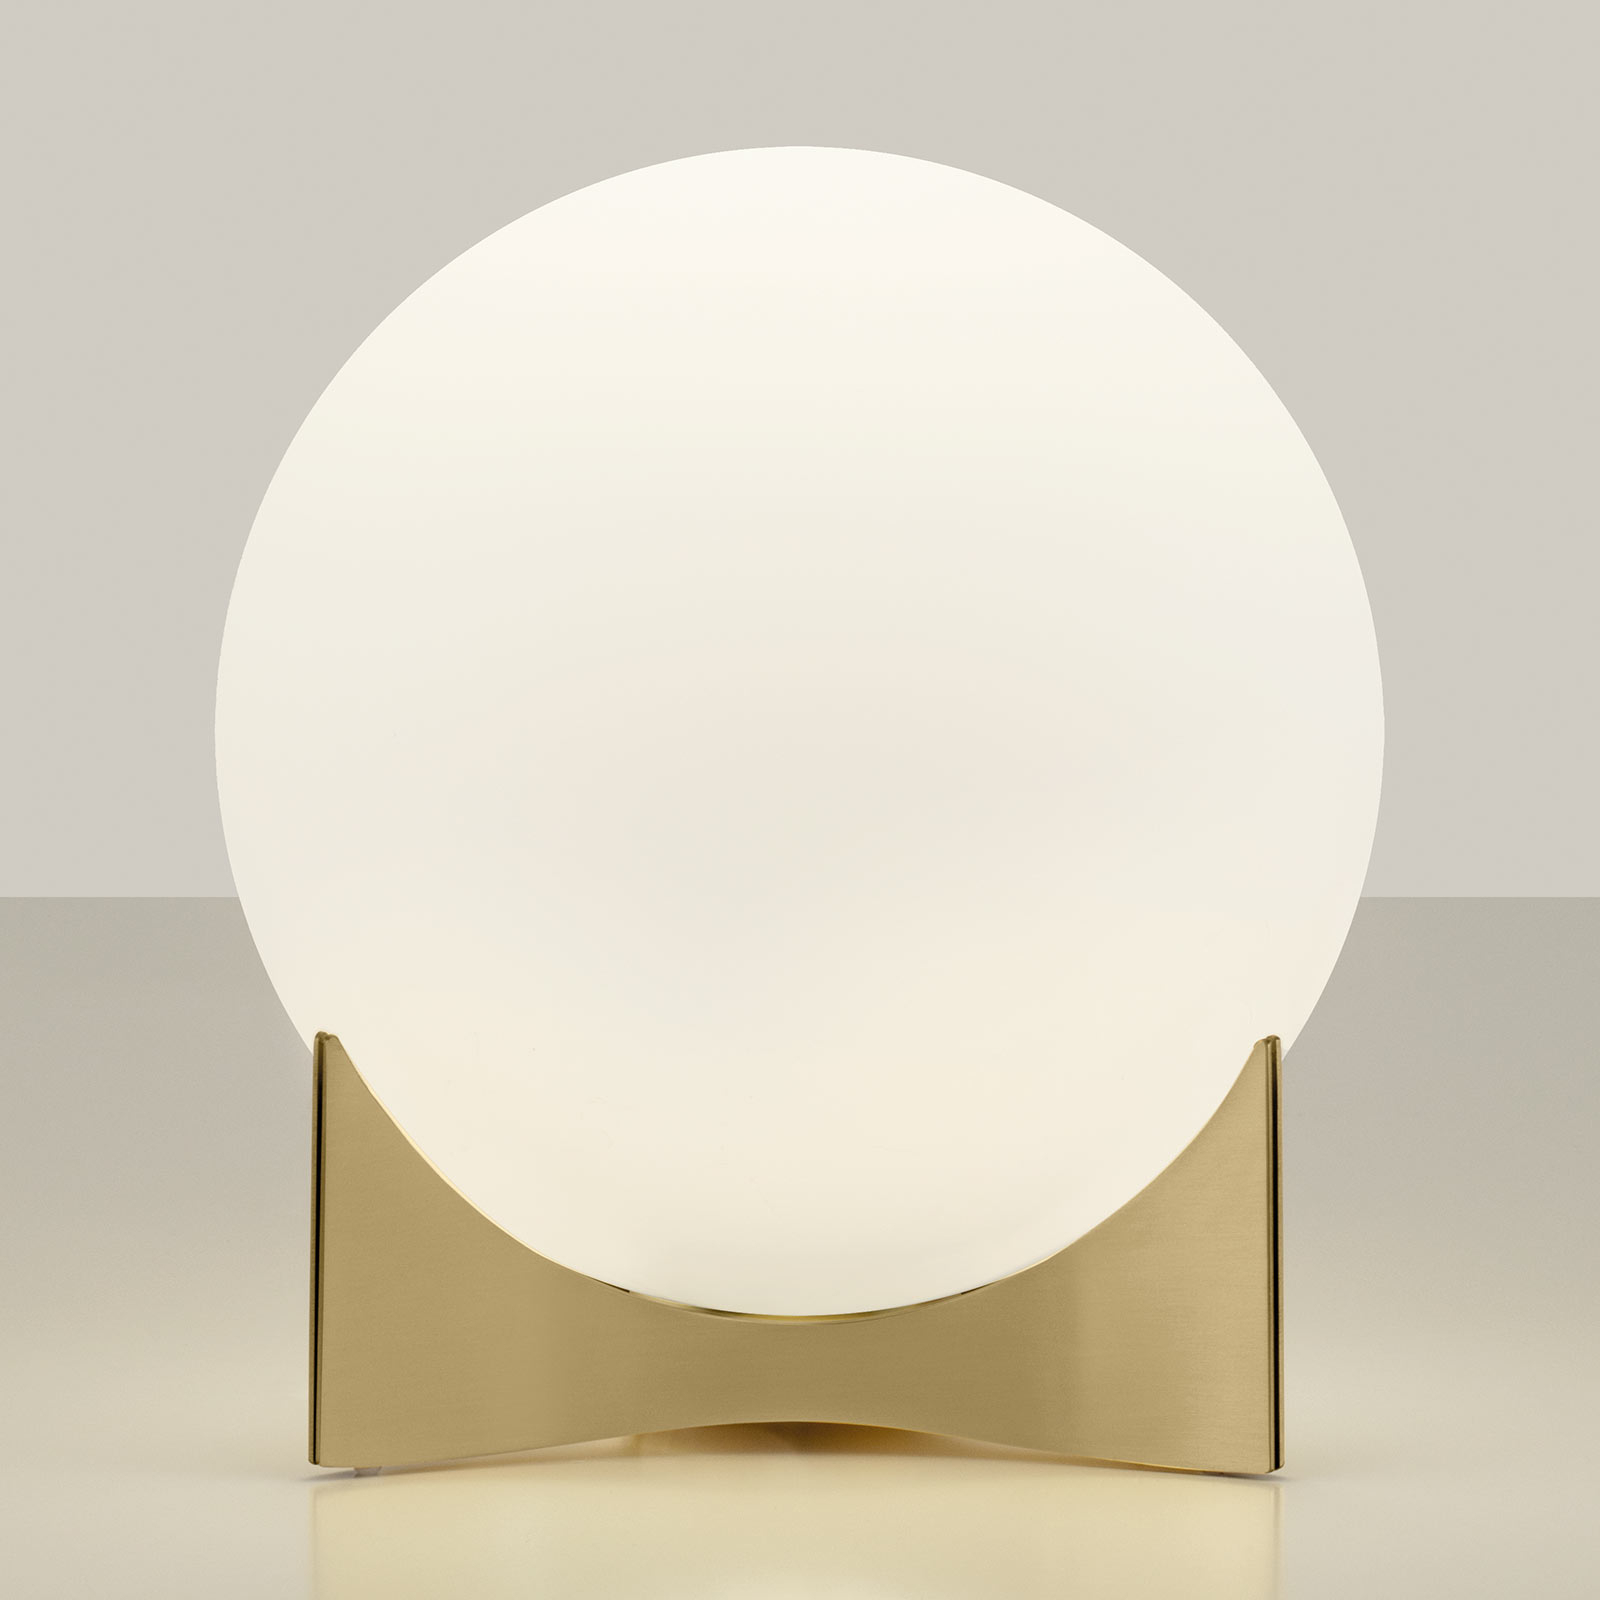 Lampa stołowa Oscar, szkło, kolor mosiądzu, Ø 20 cm